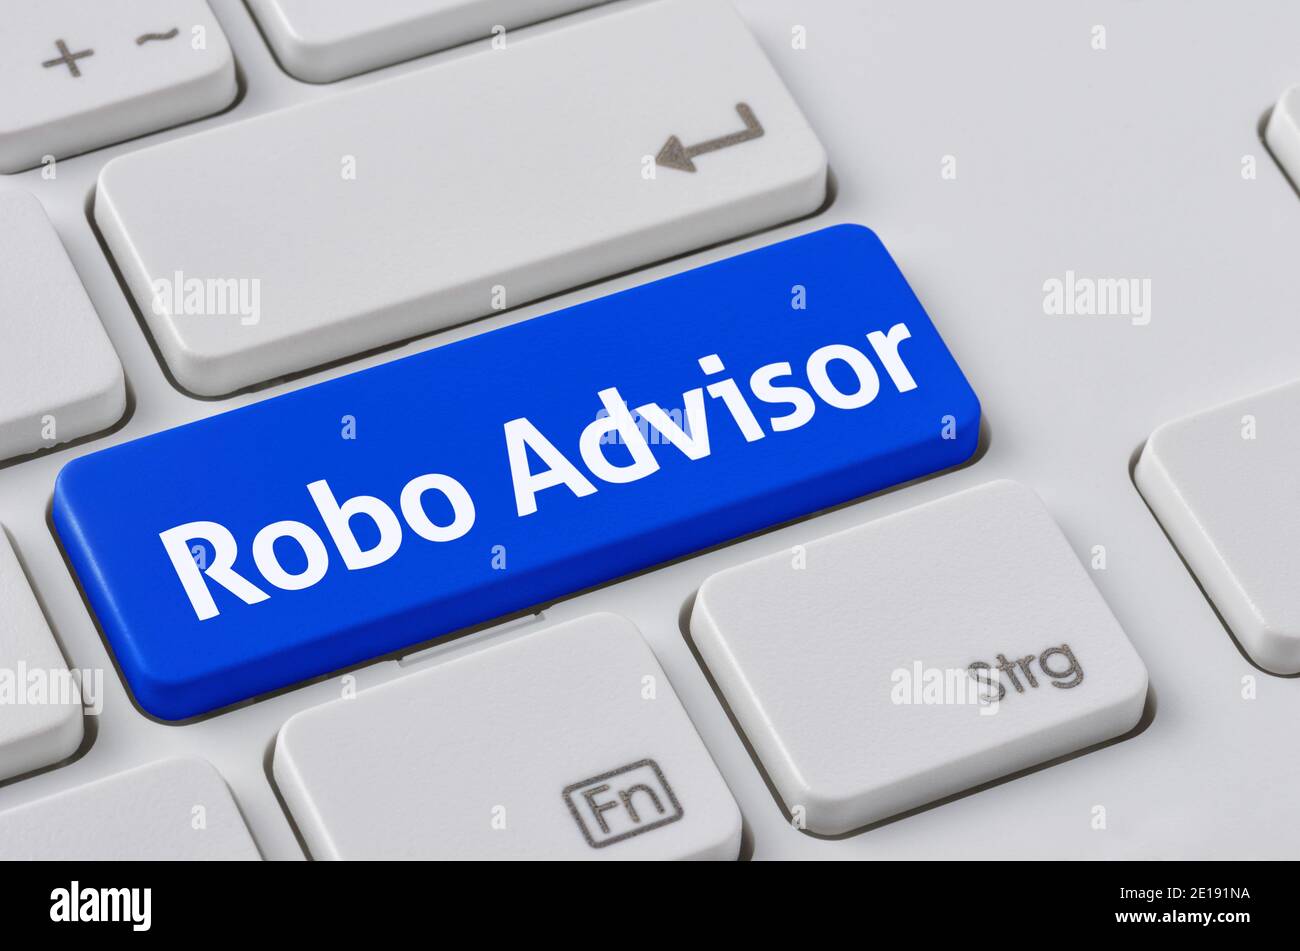 A keyboard with a blue button - Robo Advisor Stock Photo